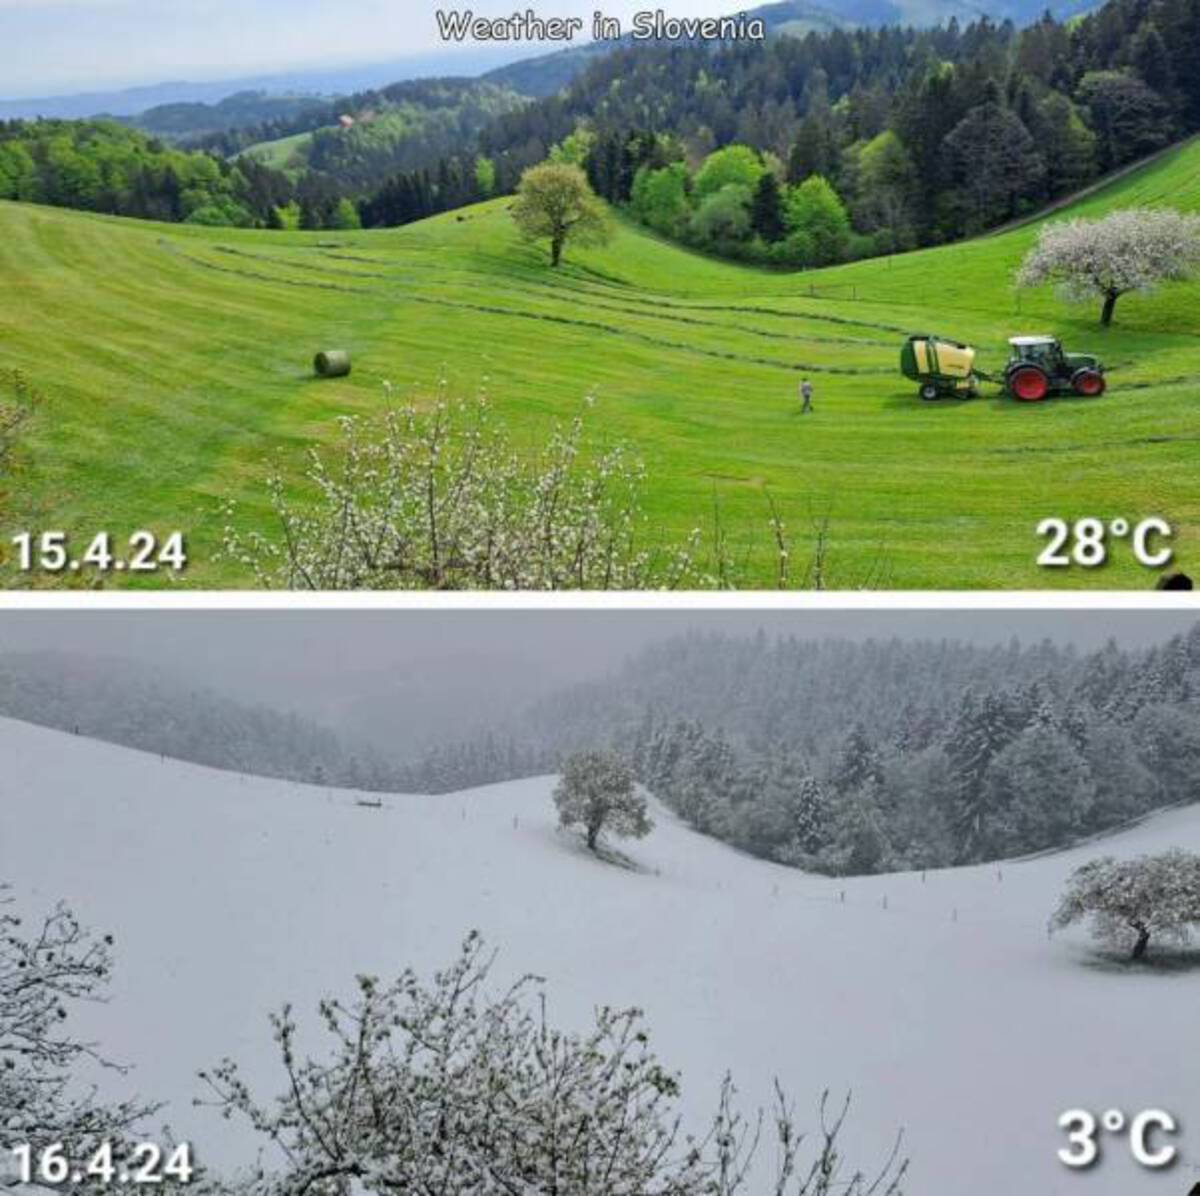 slovenia temperature drop - Weather in Slovenia 15.4.24 28C 16.4.24 3C